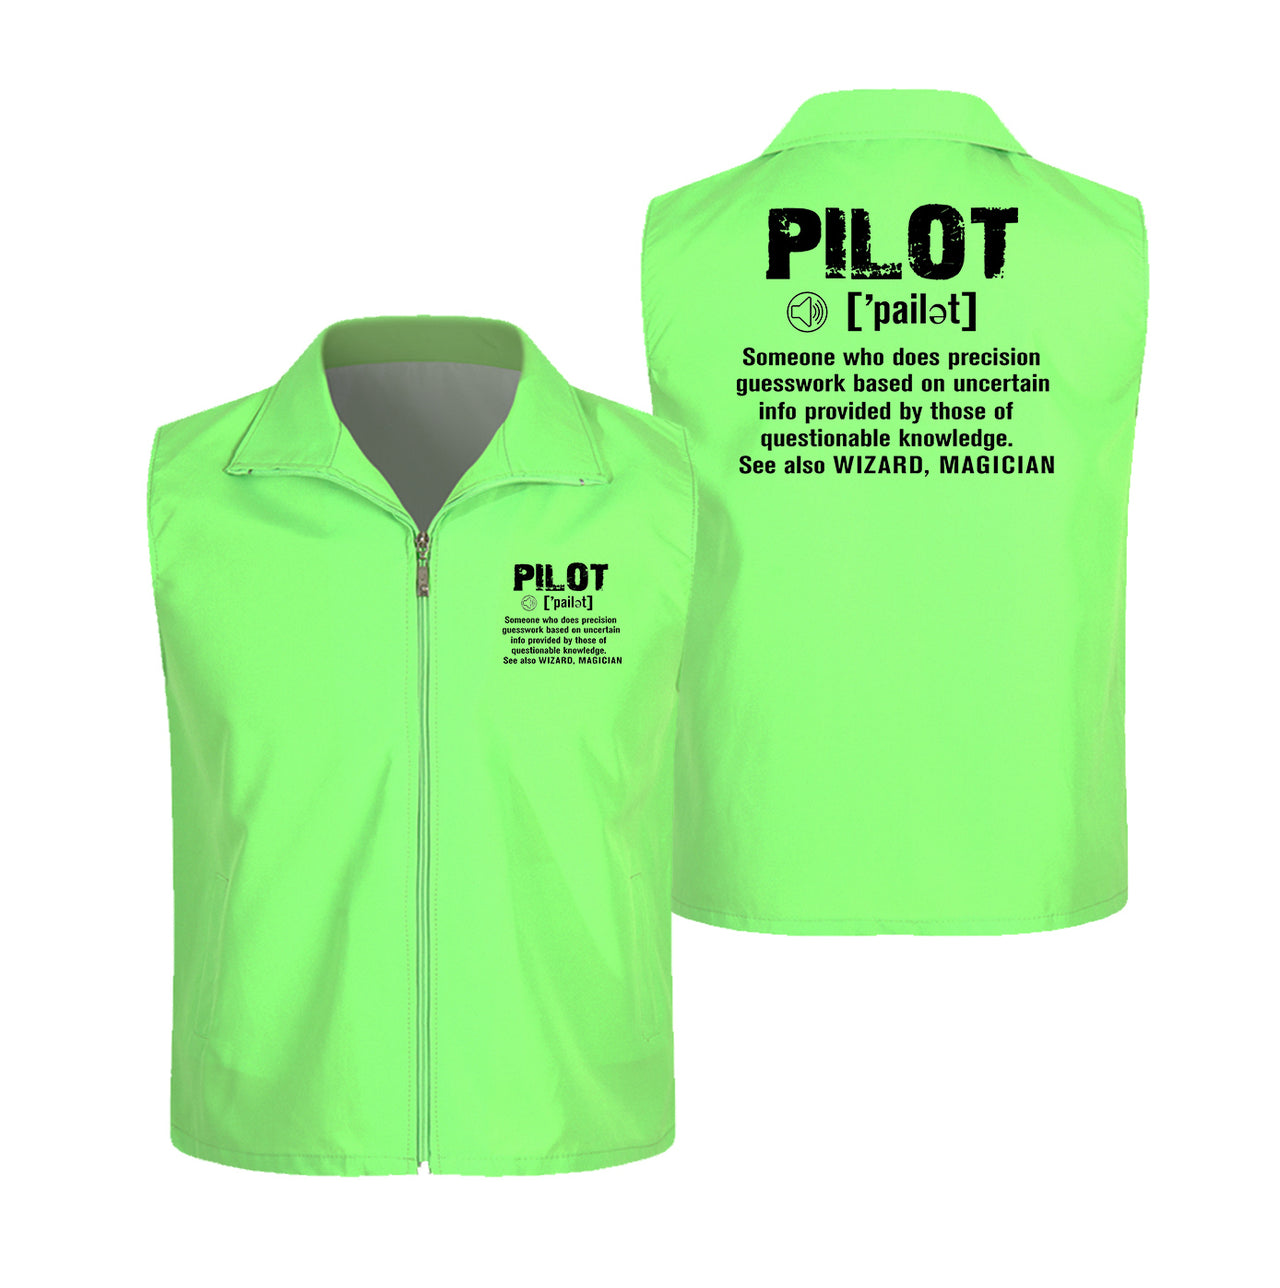 Pilot [Noun] Designed Thin Style Vests